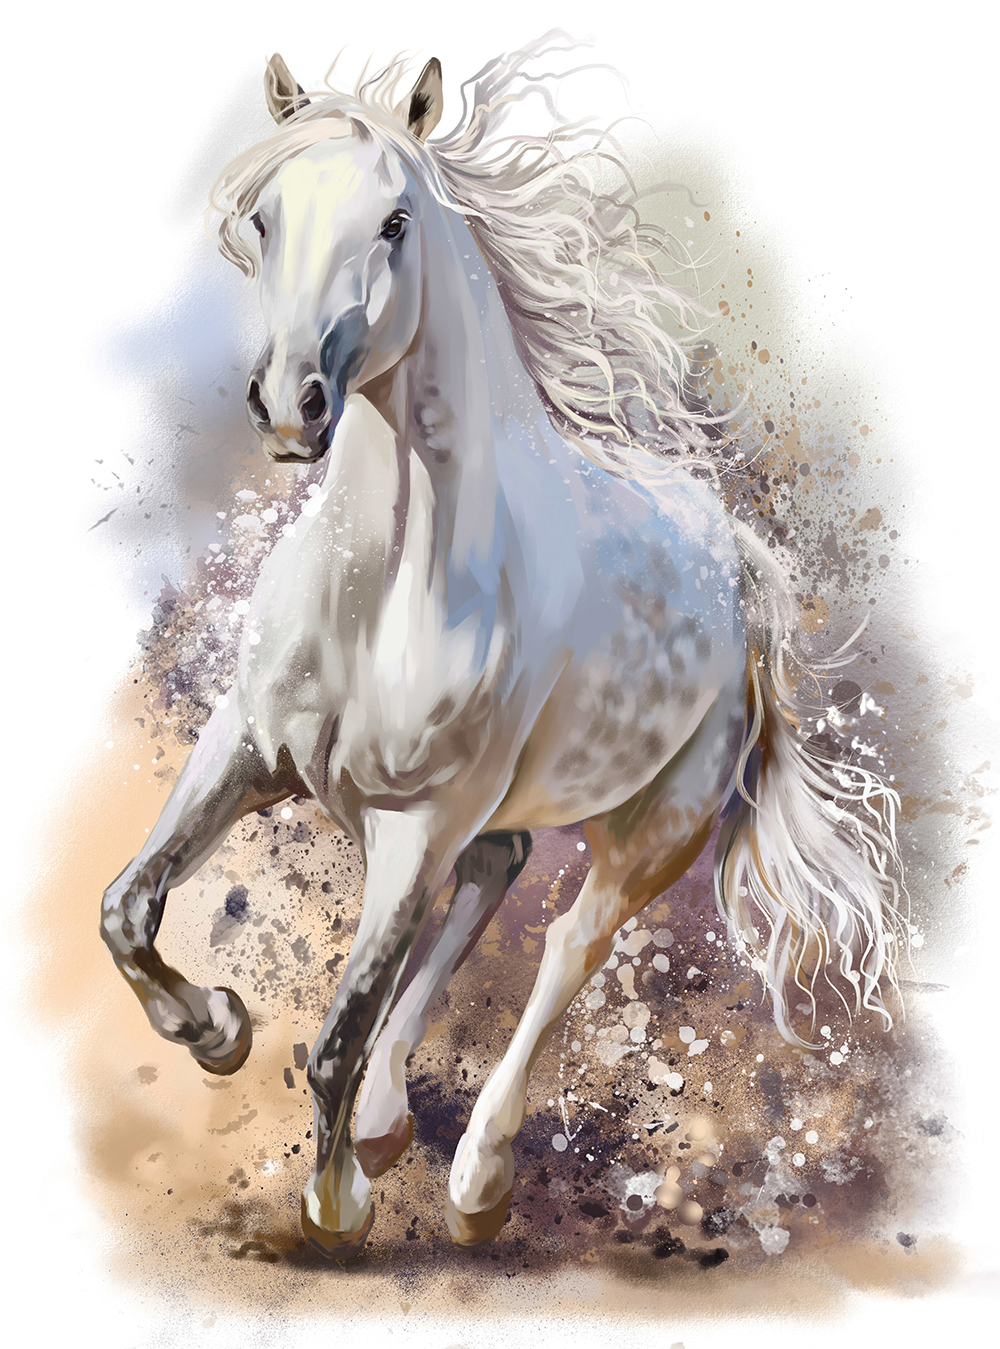 Фотообои Белый конь живопись Н-034 (2,0х2,7 м), Дивино Декор 1